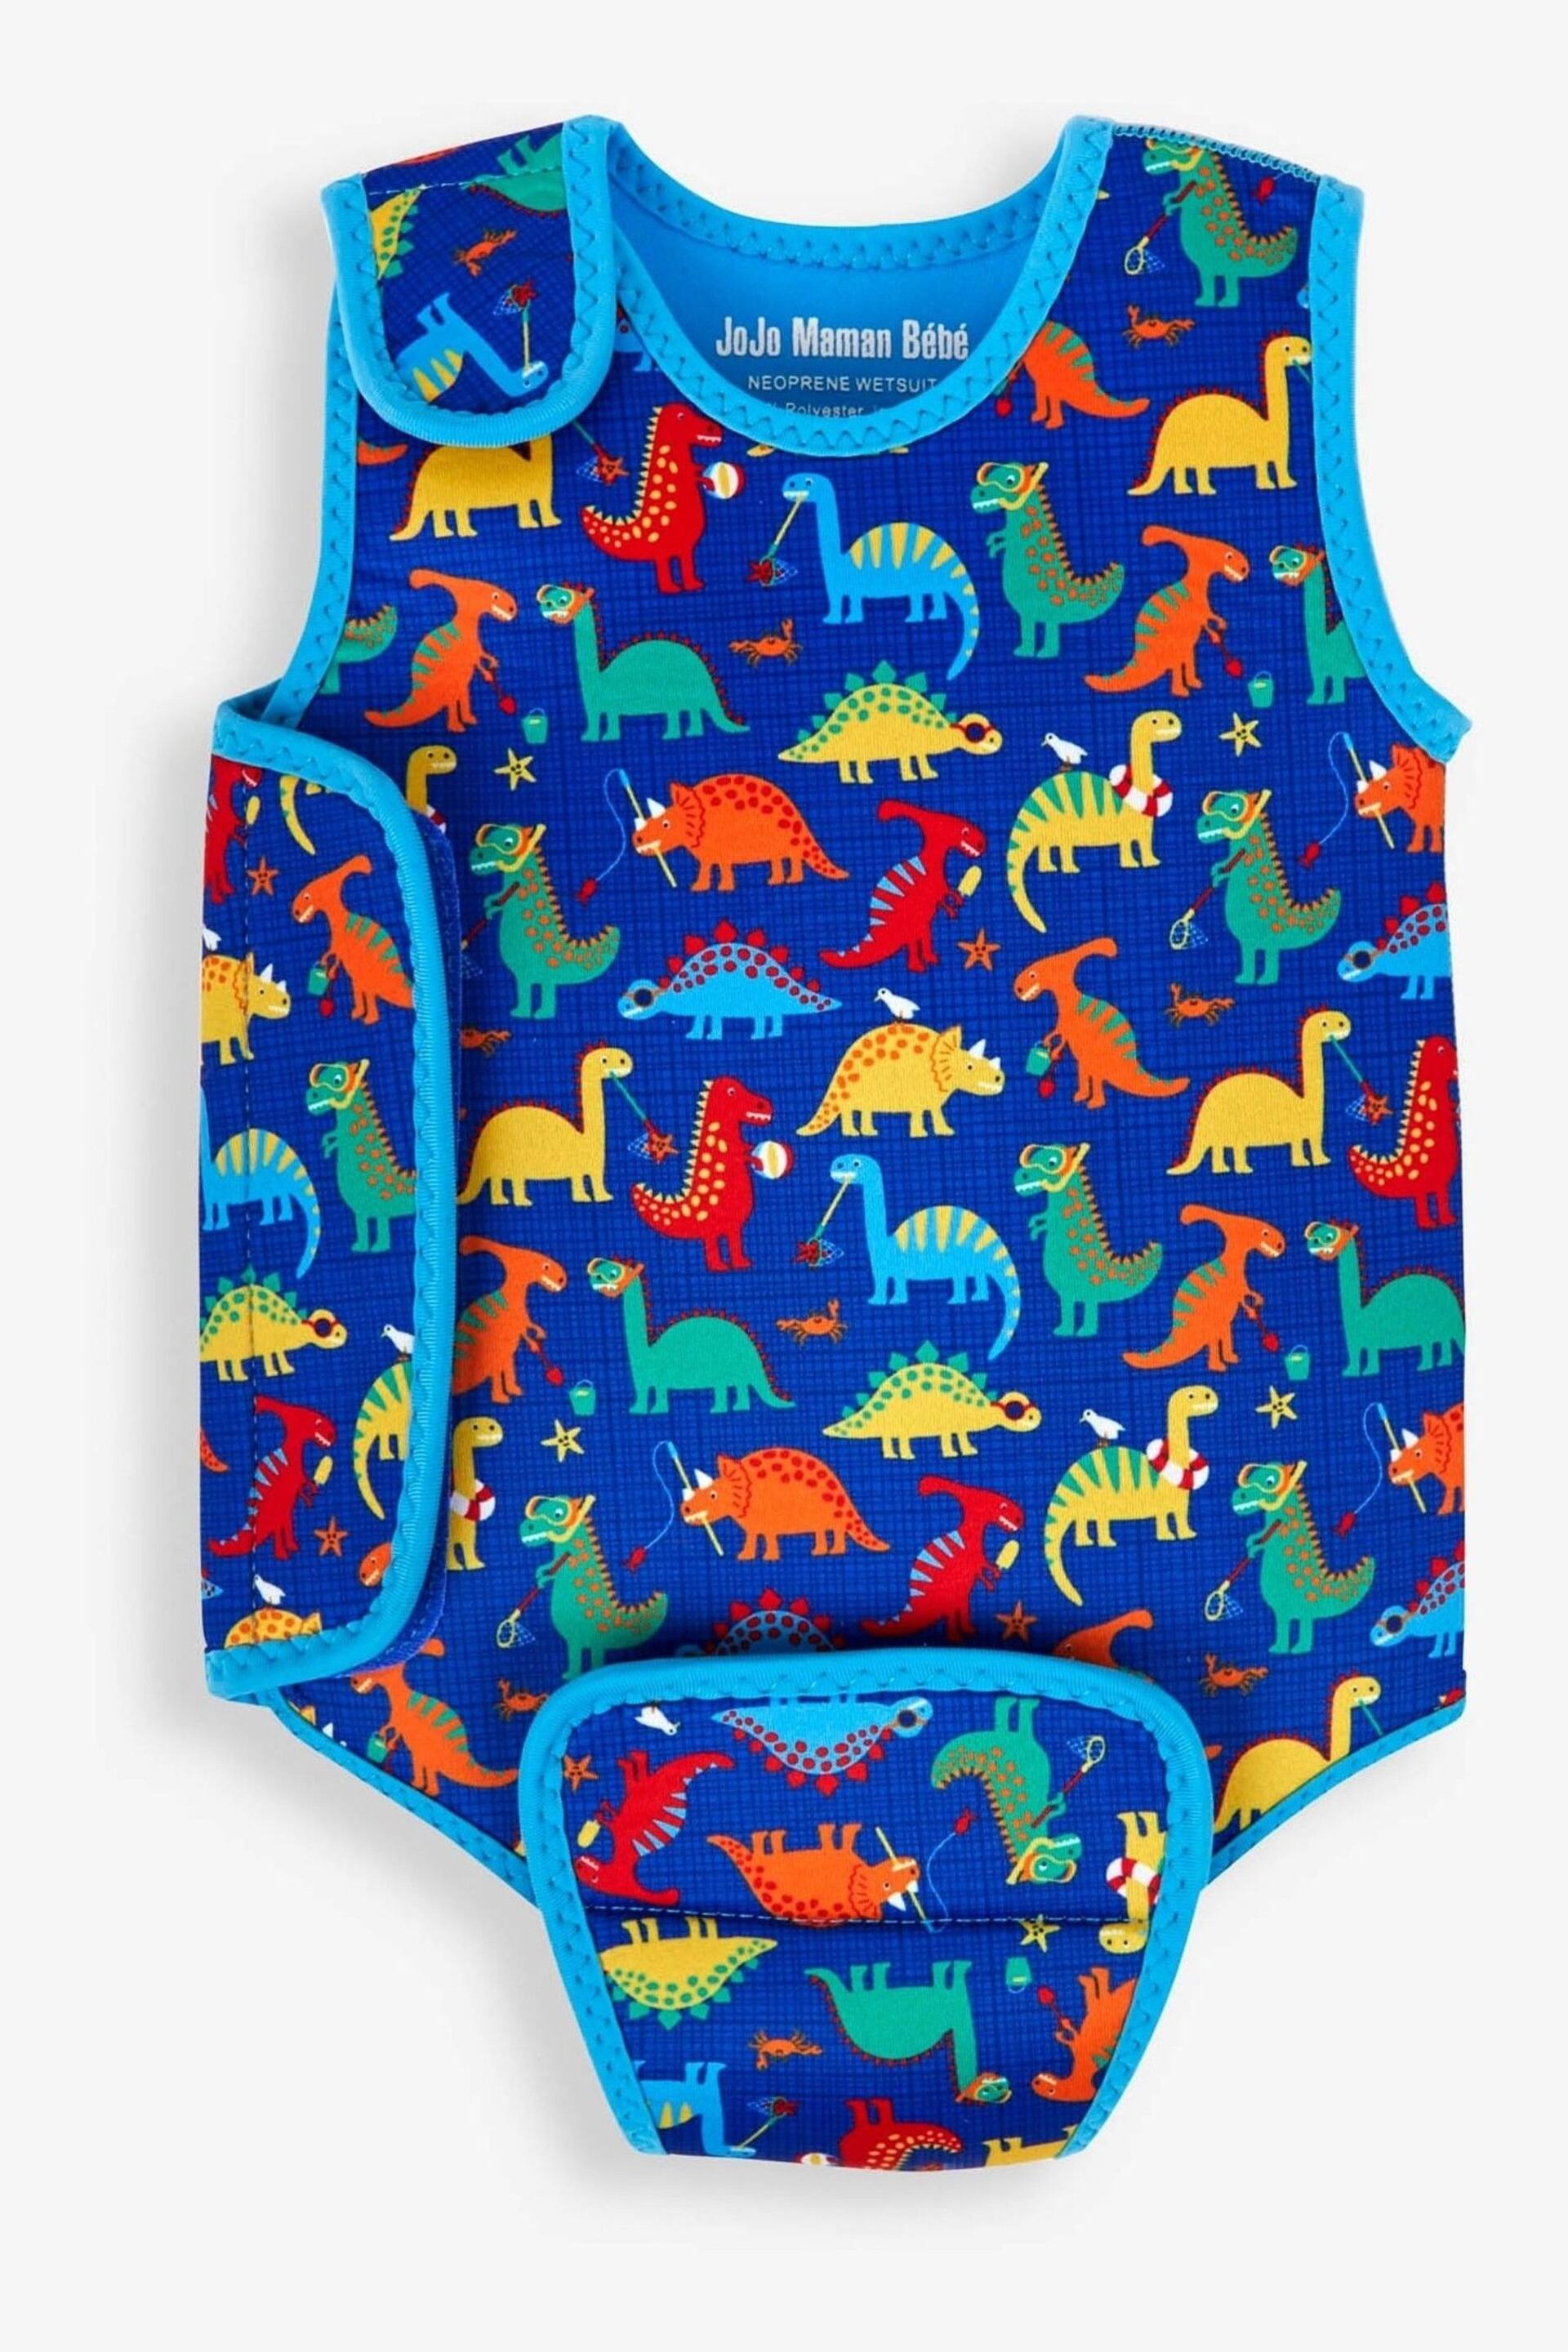 JoJo Maman Bébé Blue Dino Print Baby Wetsuit - Image 2 of 4